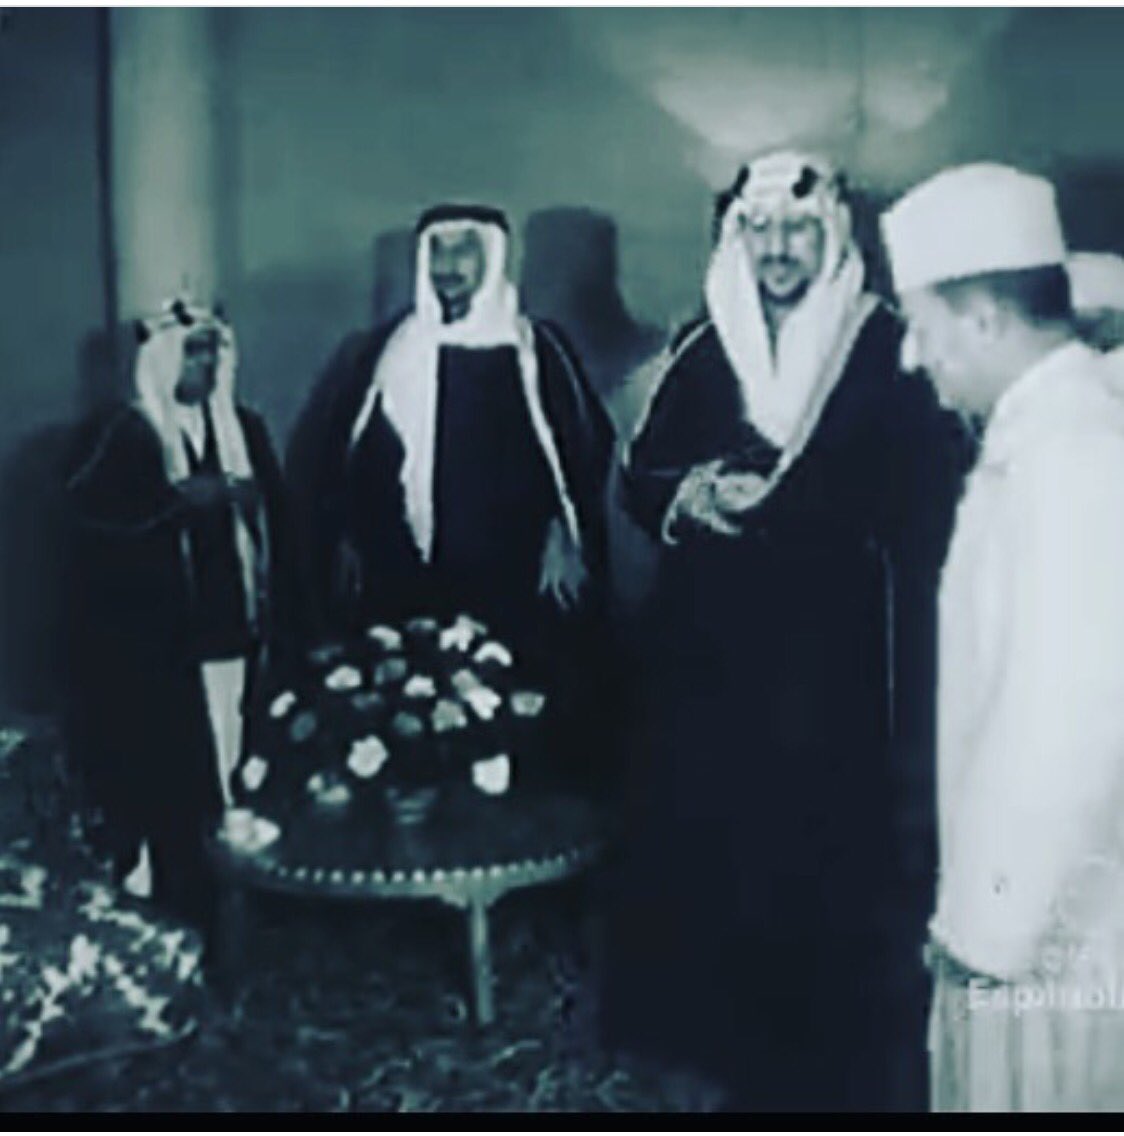 الملك سعود والملك محمد الخامس والأمراء محمد بن سعود الكبير ومساعد بن عبد الرحمن رحمهم الله.